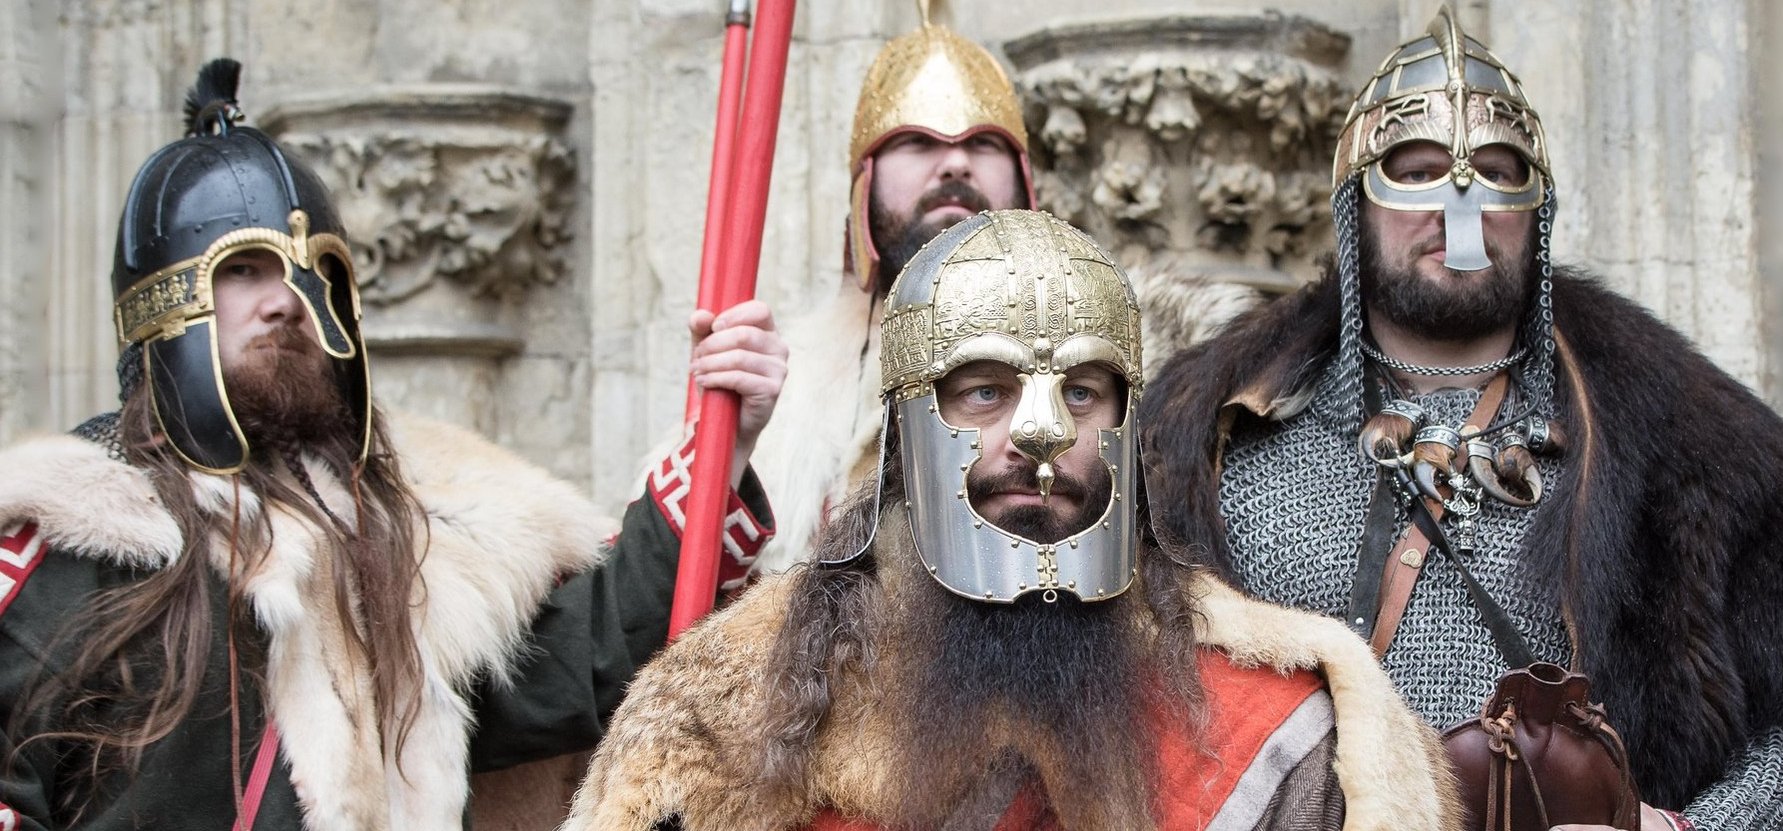 Szenzációs: vikingek is harcoltak Szent István seregében, leletek igazolják a meghökkentő tényt